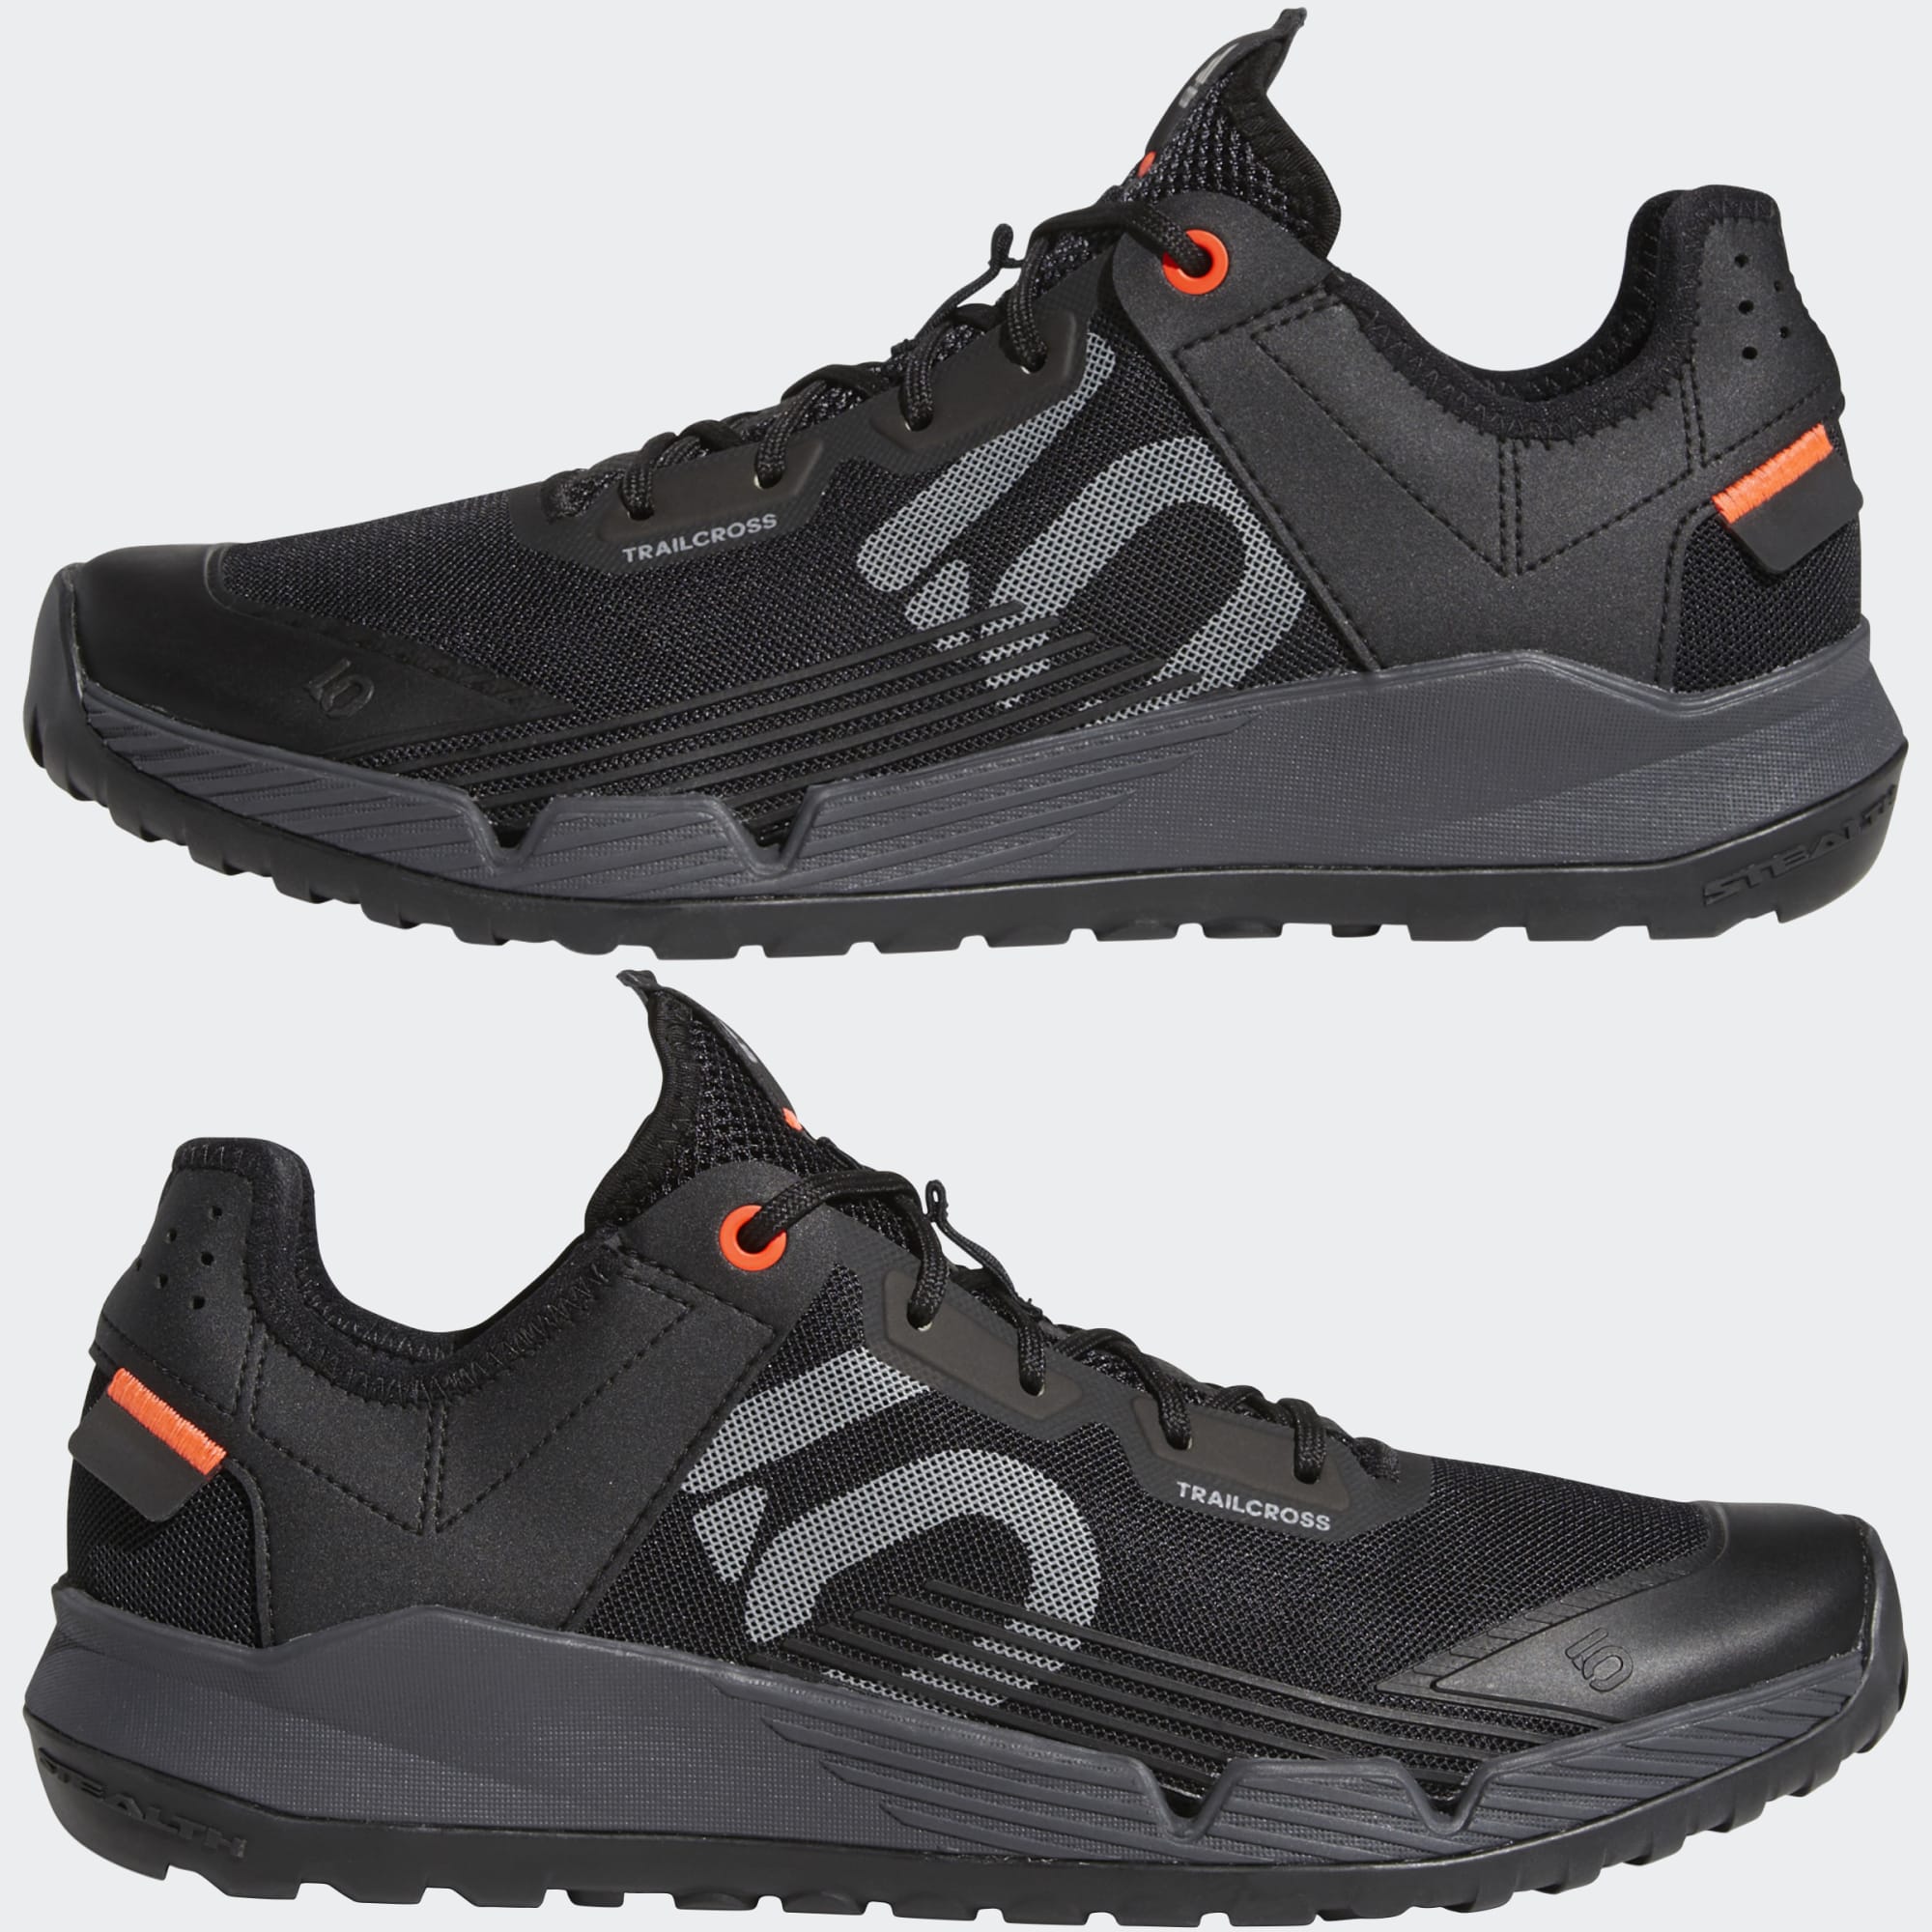 adidas Women's Five Ten Trailcross LT Mountain Bike Shoes (Core Black/Grey Two) $33.60 + Free Shipping